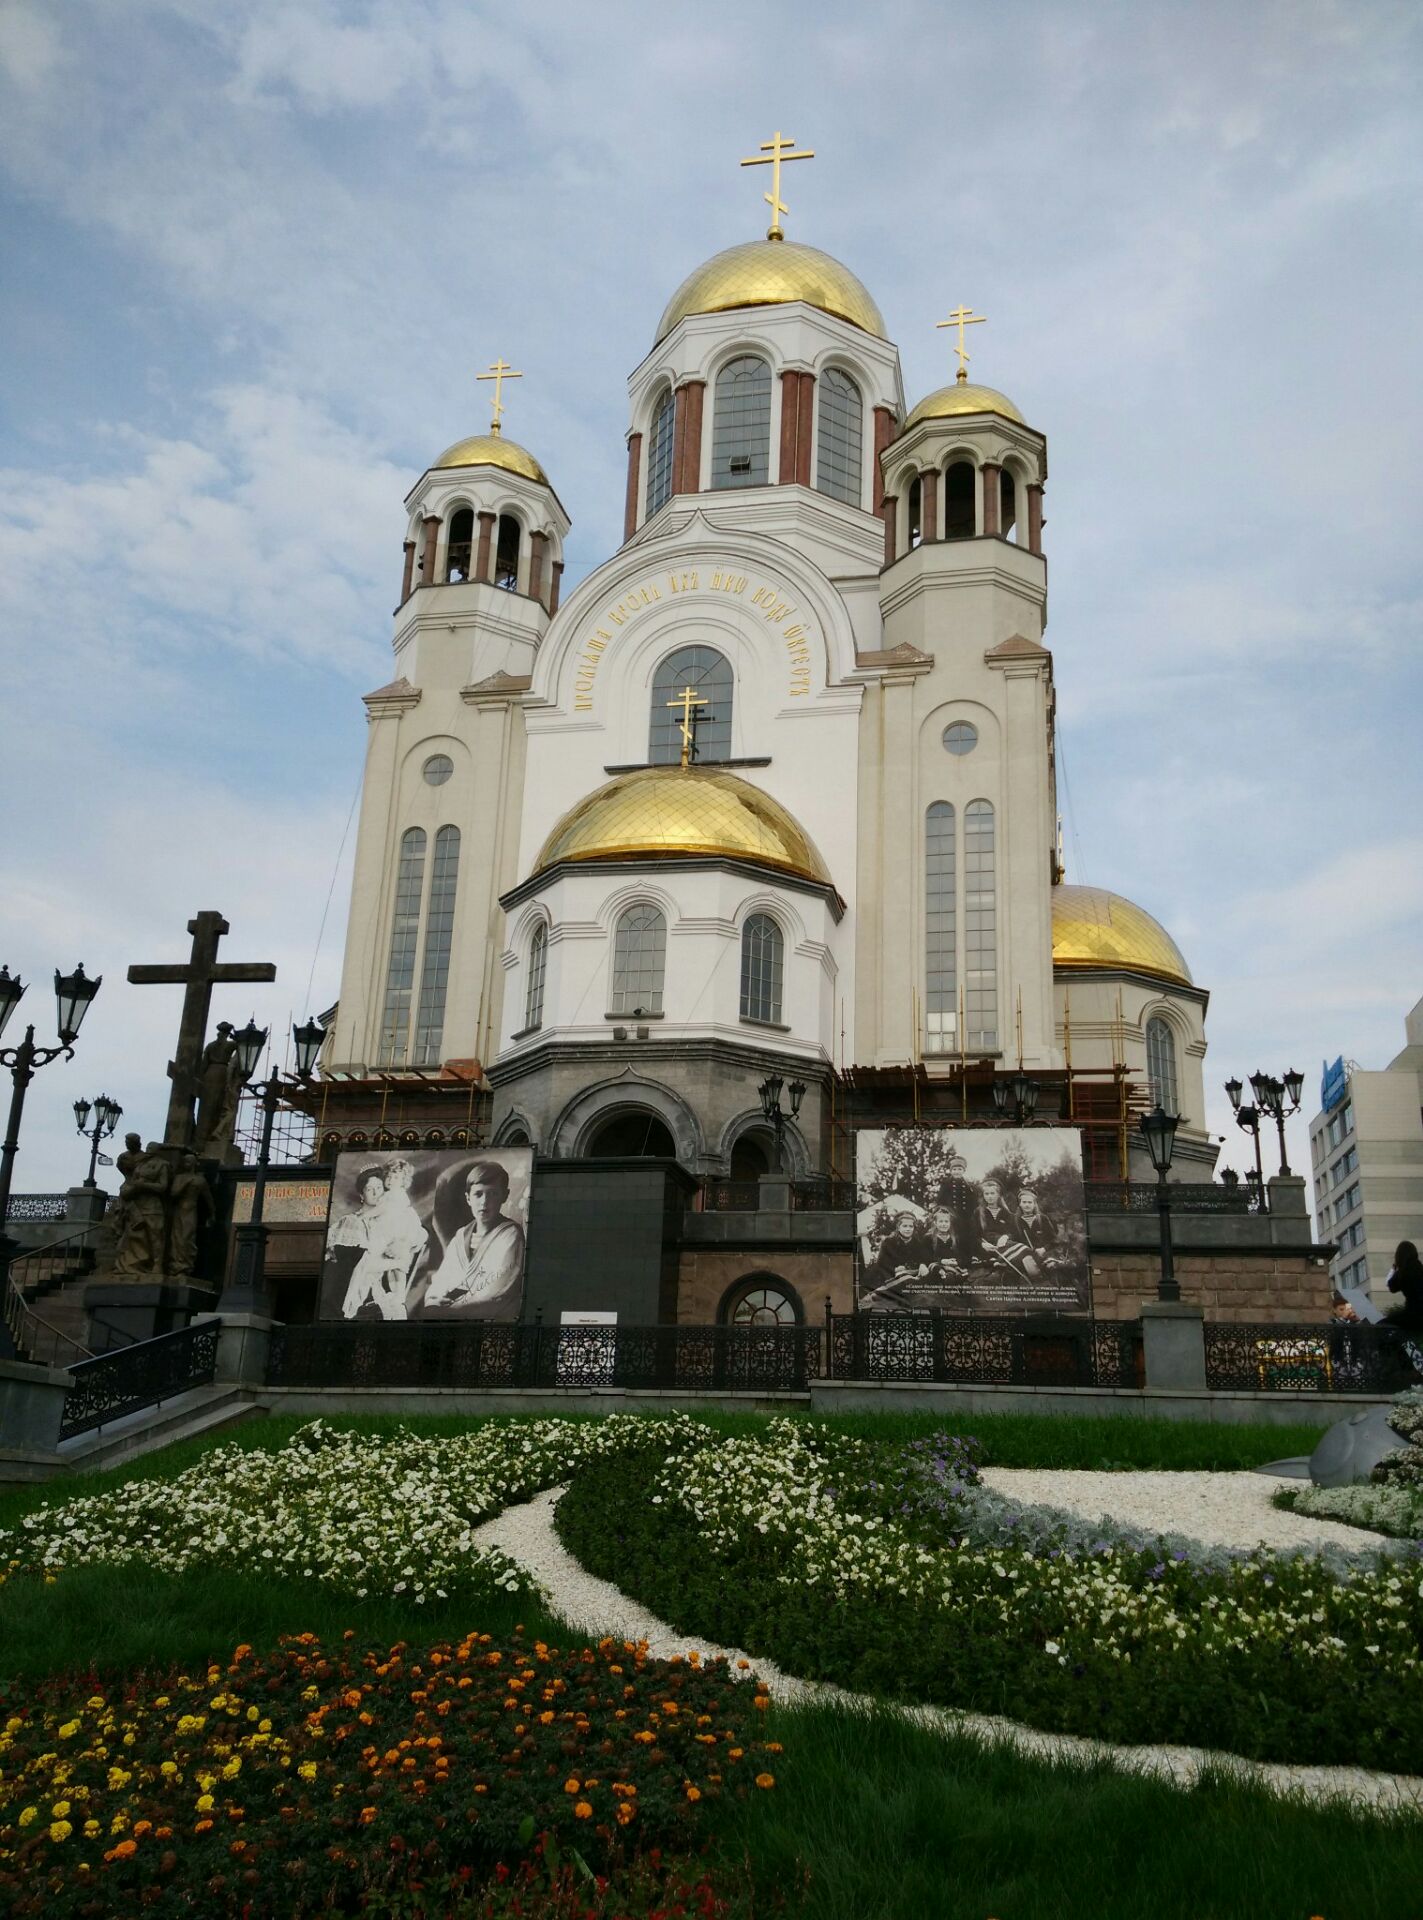 叶卡捷林堡低血大教堂是这里最著名的一座东正教教堂，整个教堂建筑非常的高大，而且金碧辉煌，他那6个金色